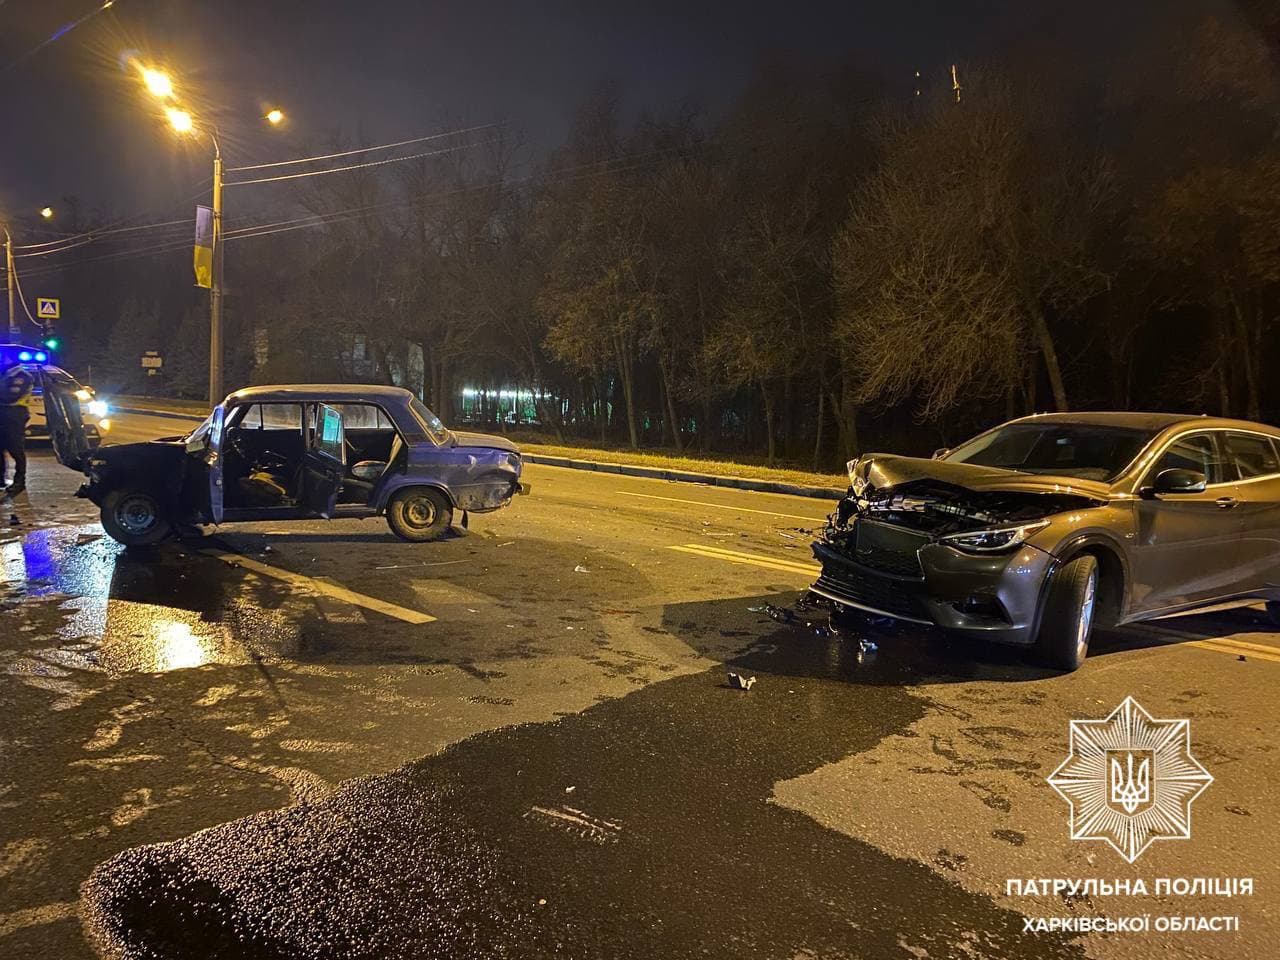 Два человека пострадали в ДТП на Белгородском шоссе